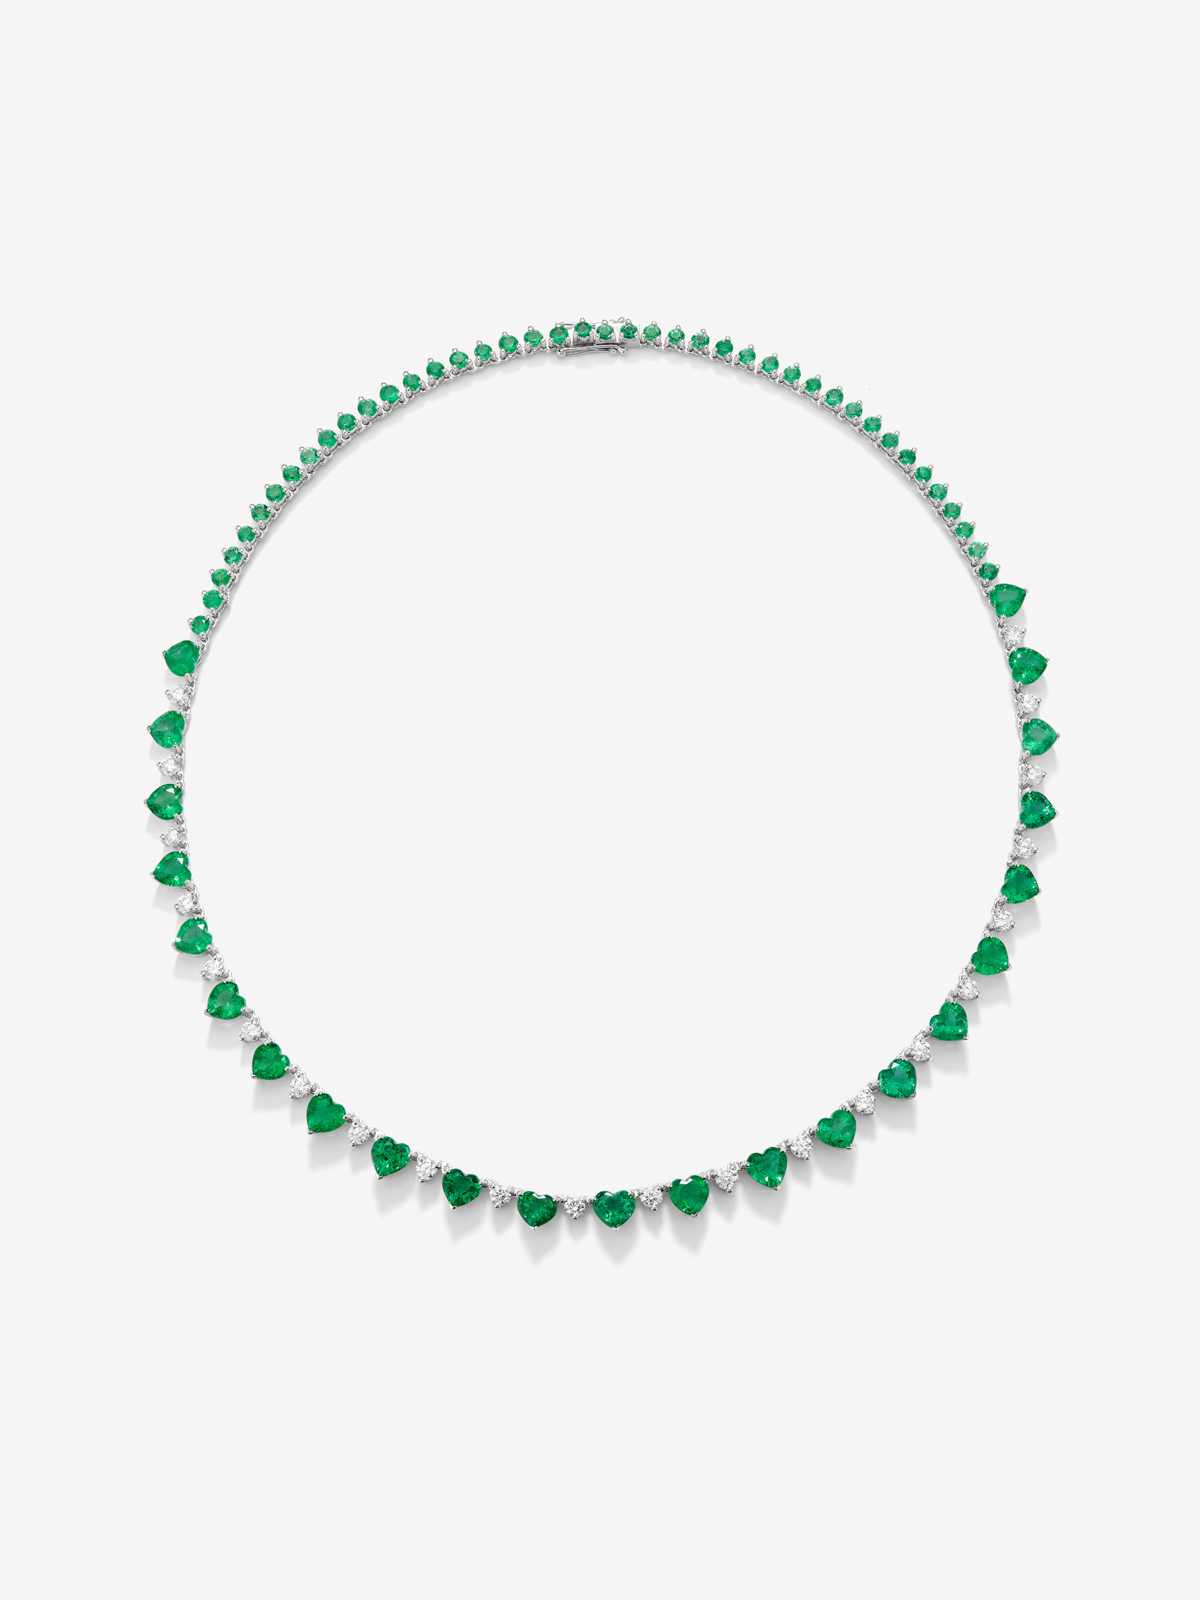 Collar de oro blanco de 18K con esmeraldas verdes en talla corazón y brillante de 19,21 cts y diamantes blancos en talla brillante de 2,71 cts